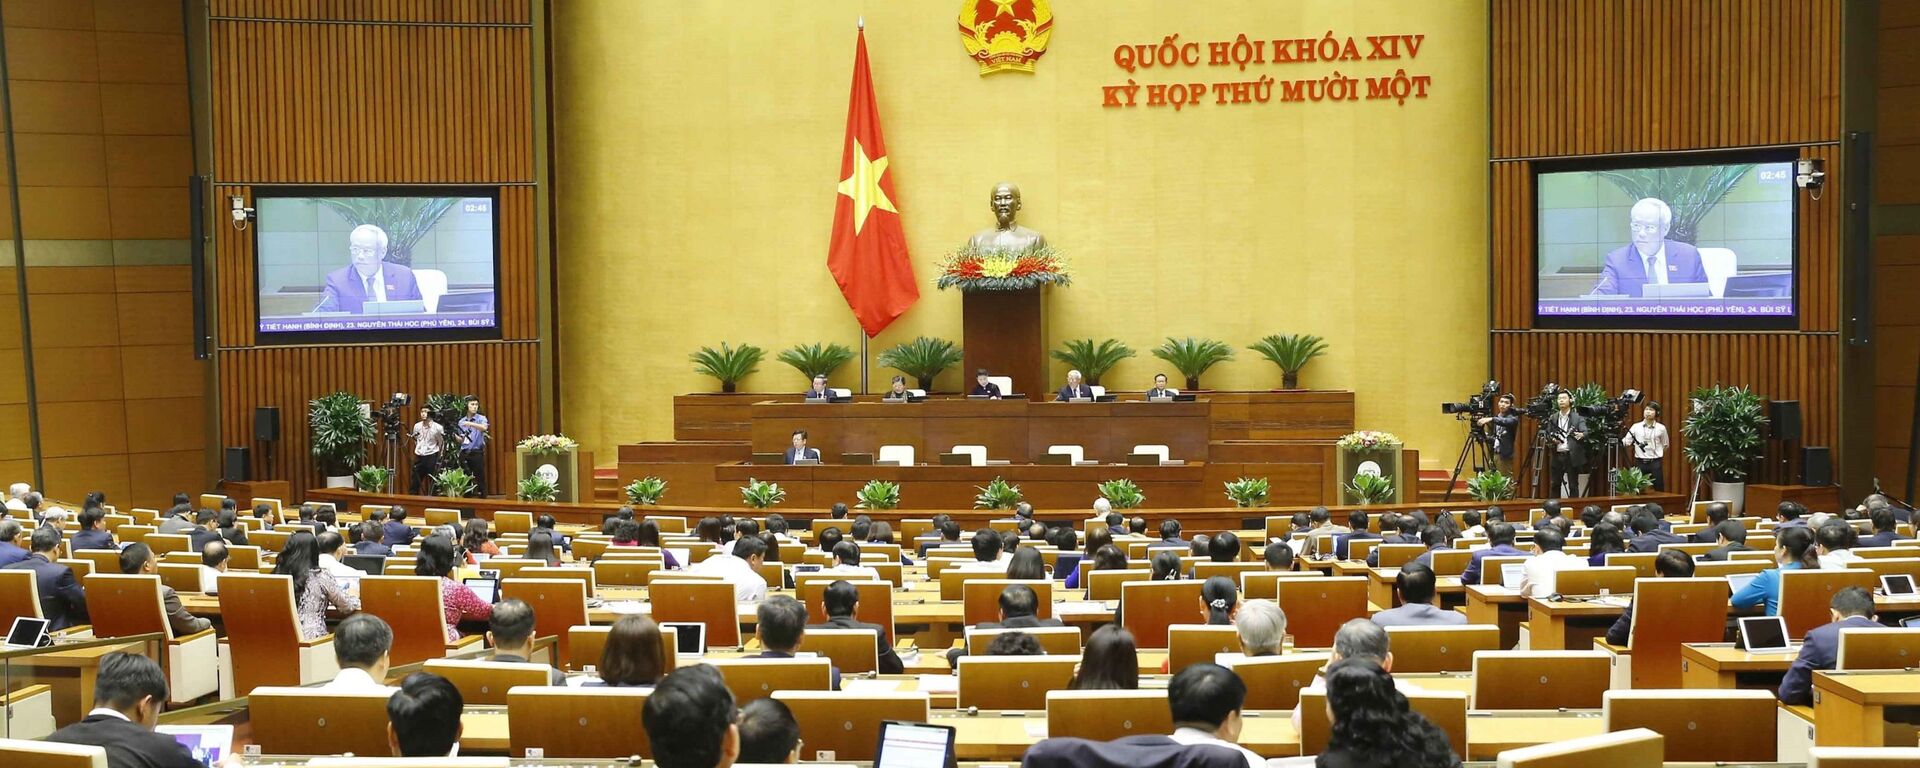 Quang cảnh phiên họp Quốc hội sáng 29/3.  - Sputnik Việt Nam, 1920, 29.03.2021